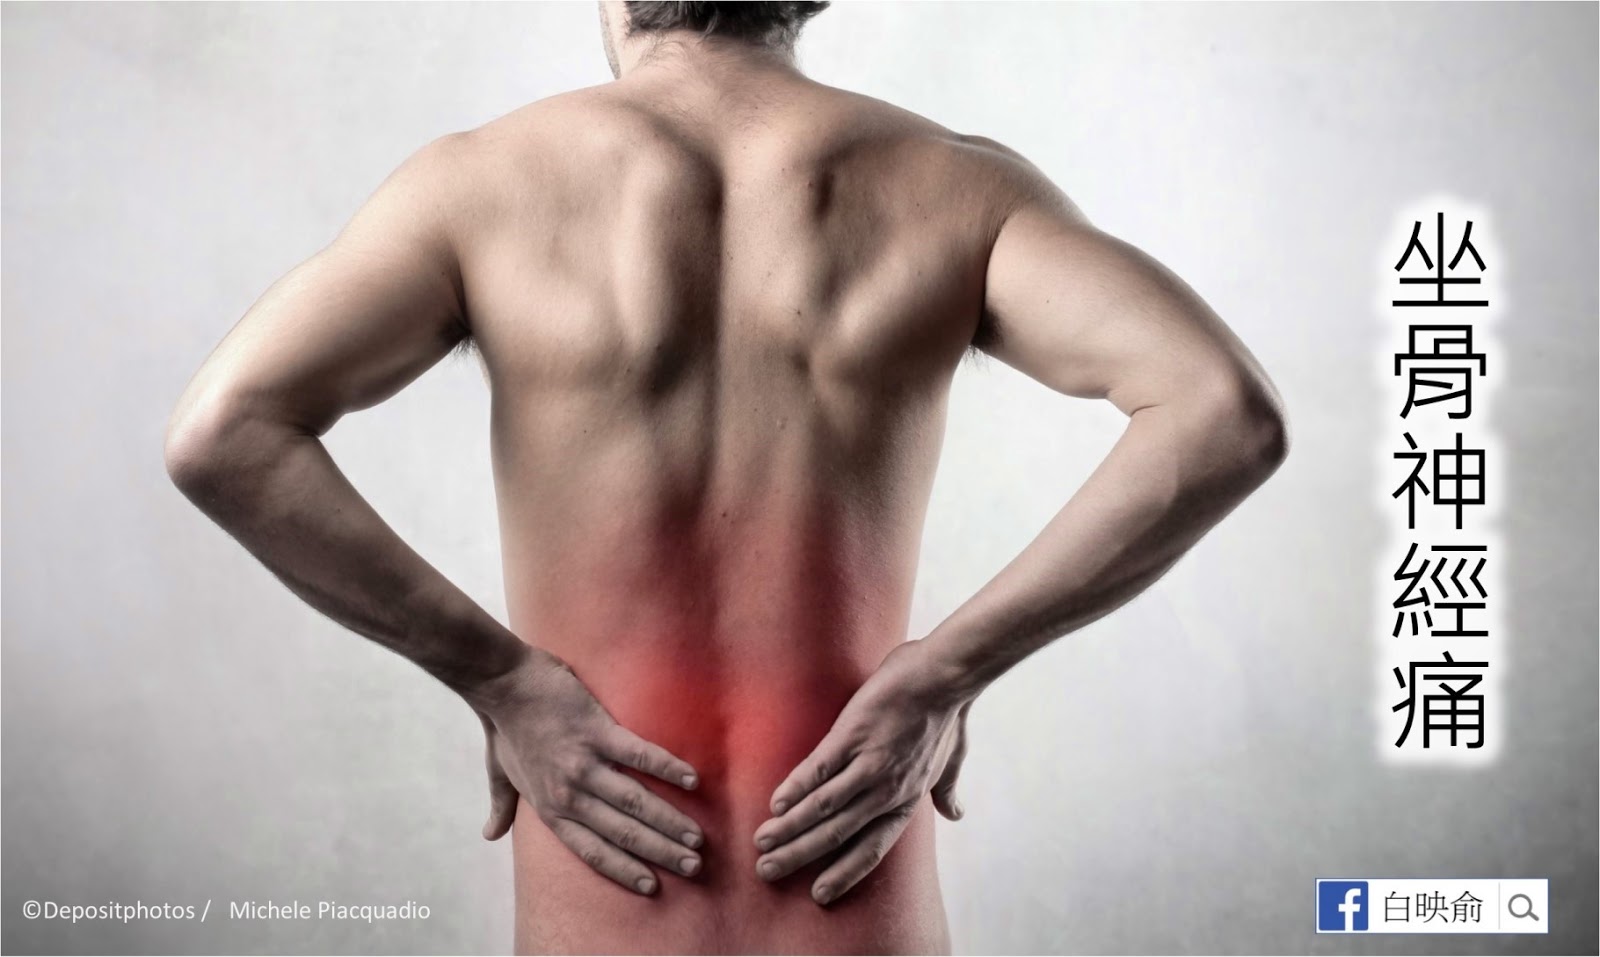 Давит поясницу. Поясница. Воспалительная боль в спине. Спина человека. Картинка спины человека.